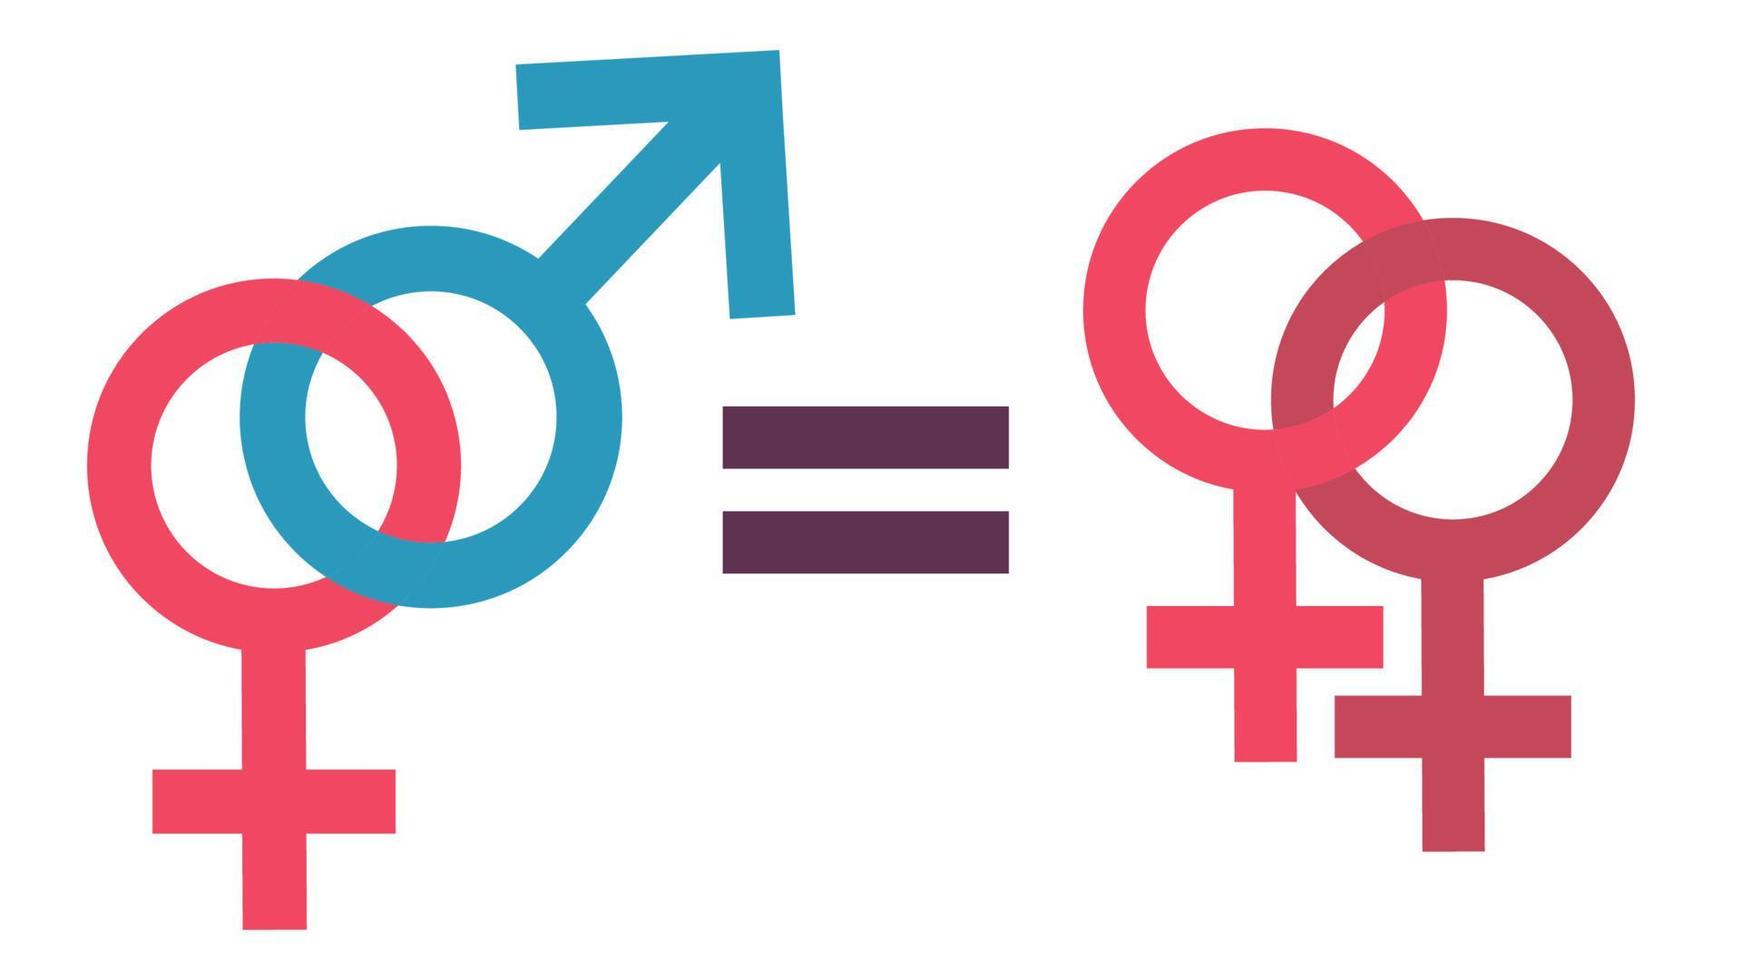 el concepto de igualdad masculina y femenina. igualdad de la familia lesbiana y las relaciones tradicionales. concepto de igualdad de derechos. igualdad de género. vector